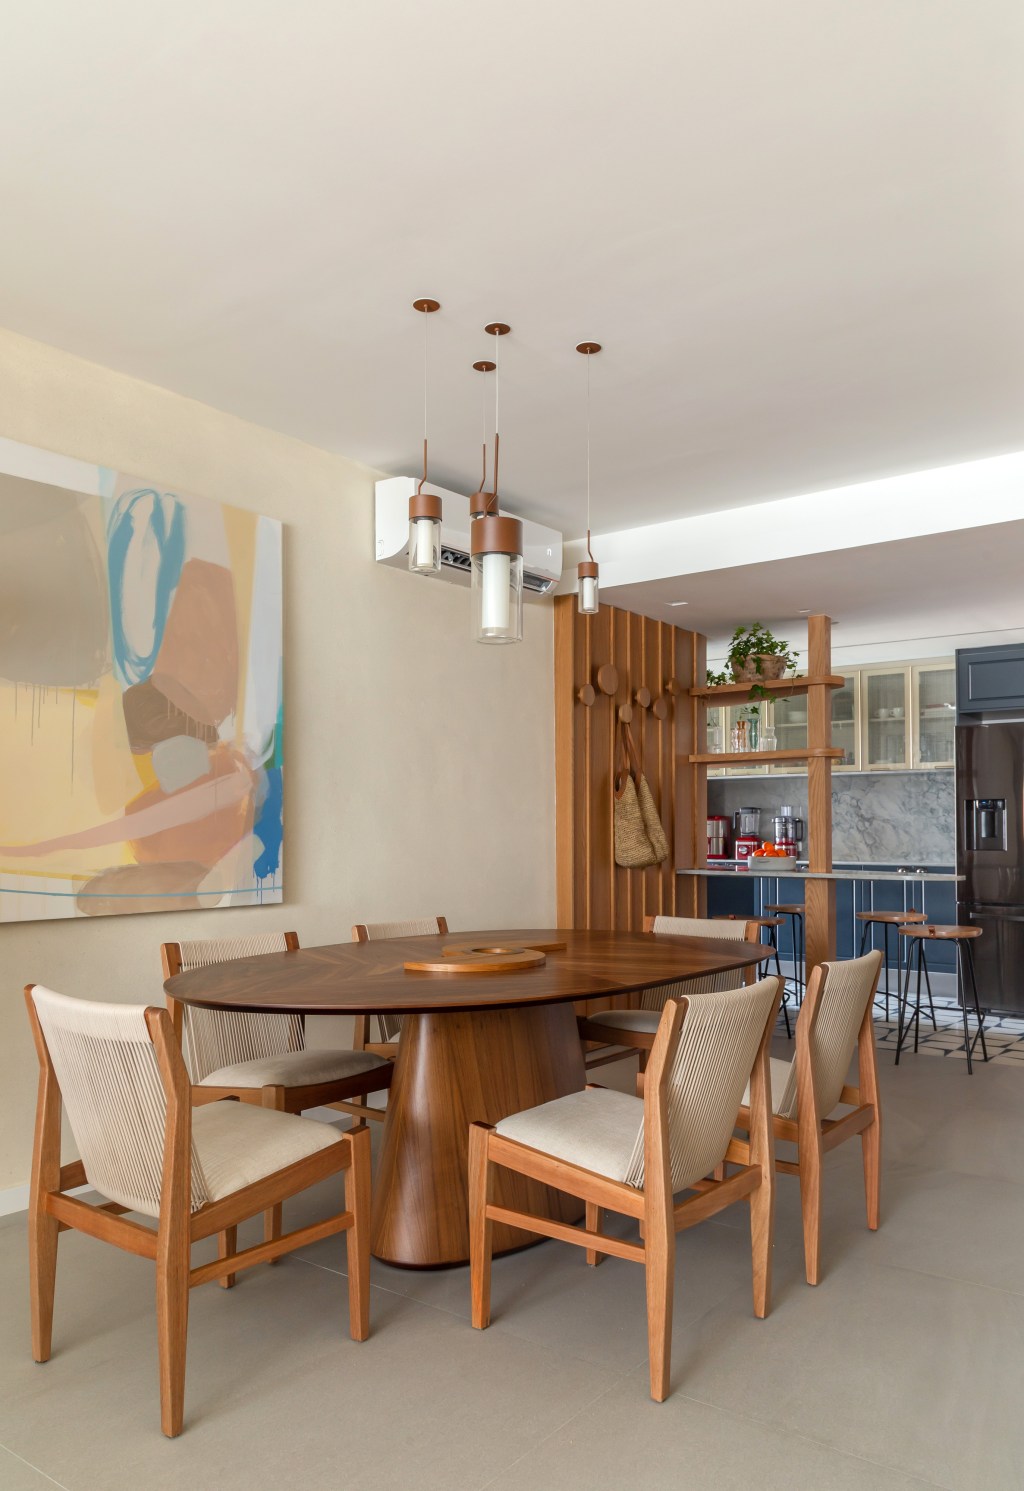 Apê 110 m2 cozinha retrô home office escondido Kelly Figueiredo decoracao apartamento cozinha sala de jantar mesa quadro madeira